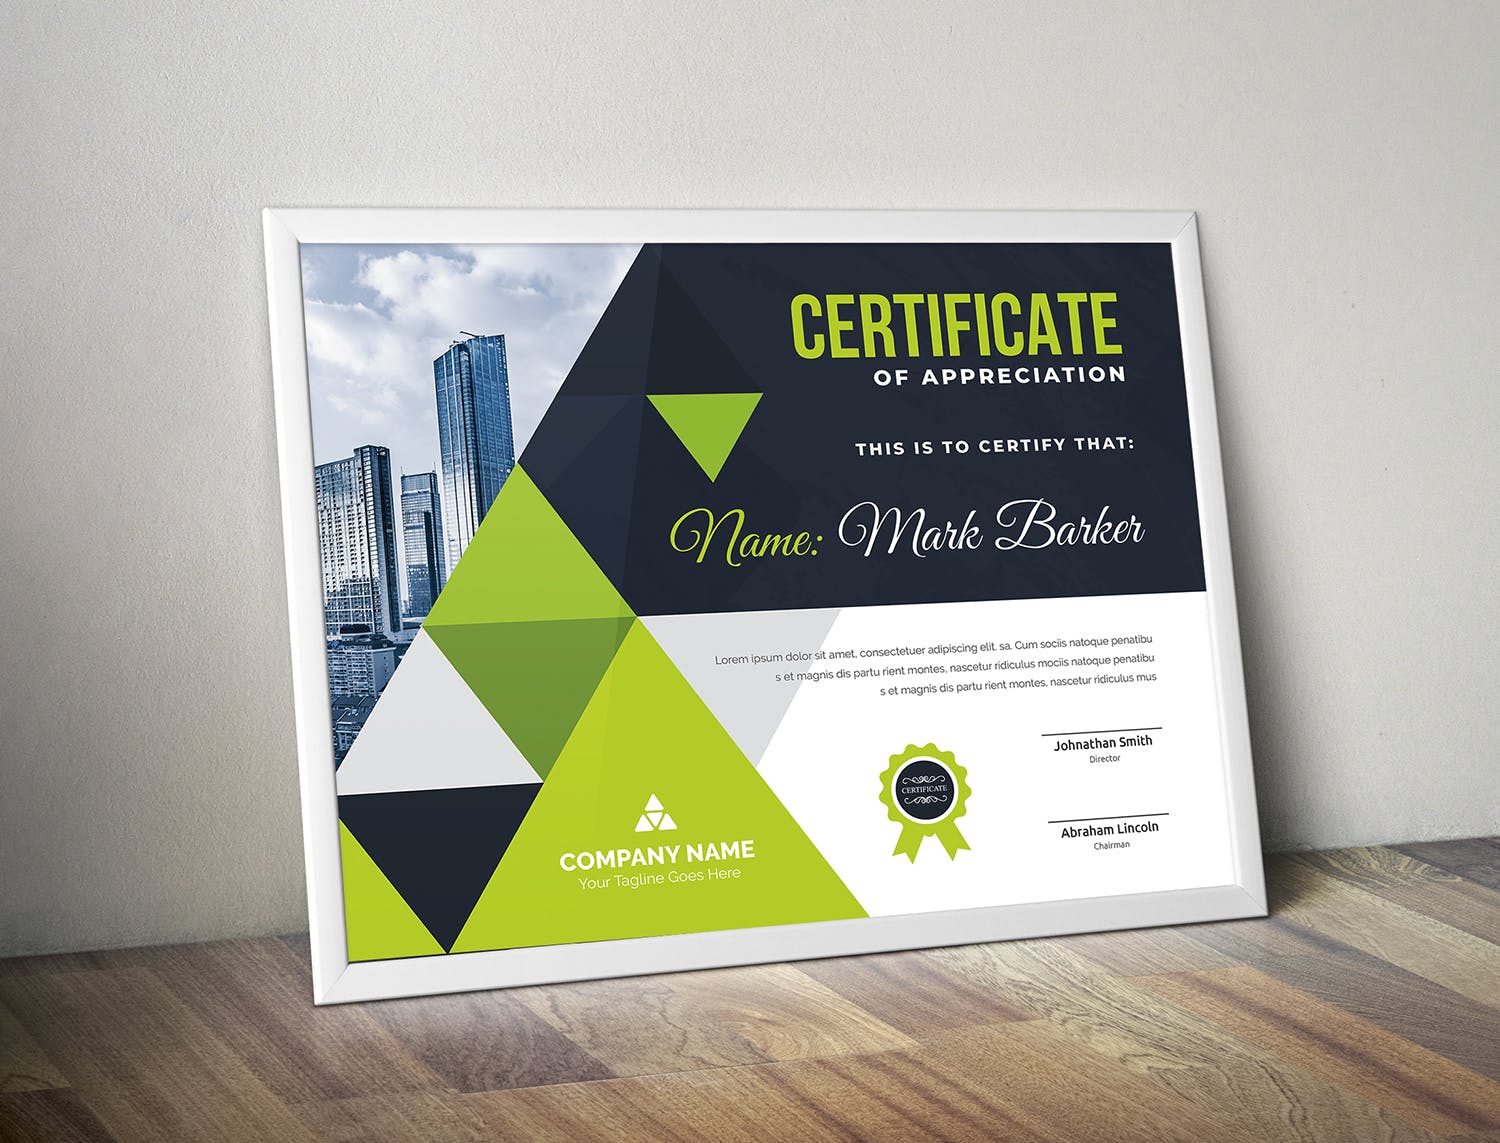 品牌销售代理/资格认证证书设计模板 Certificate插图(2)